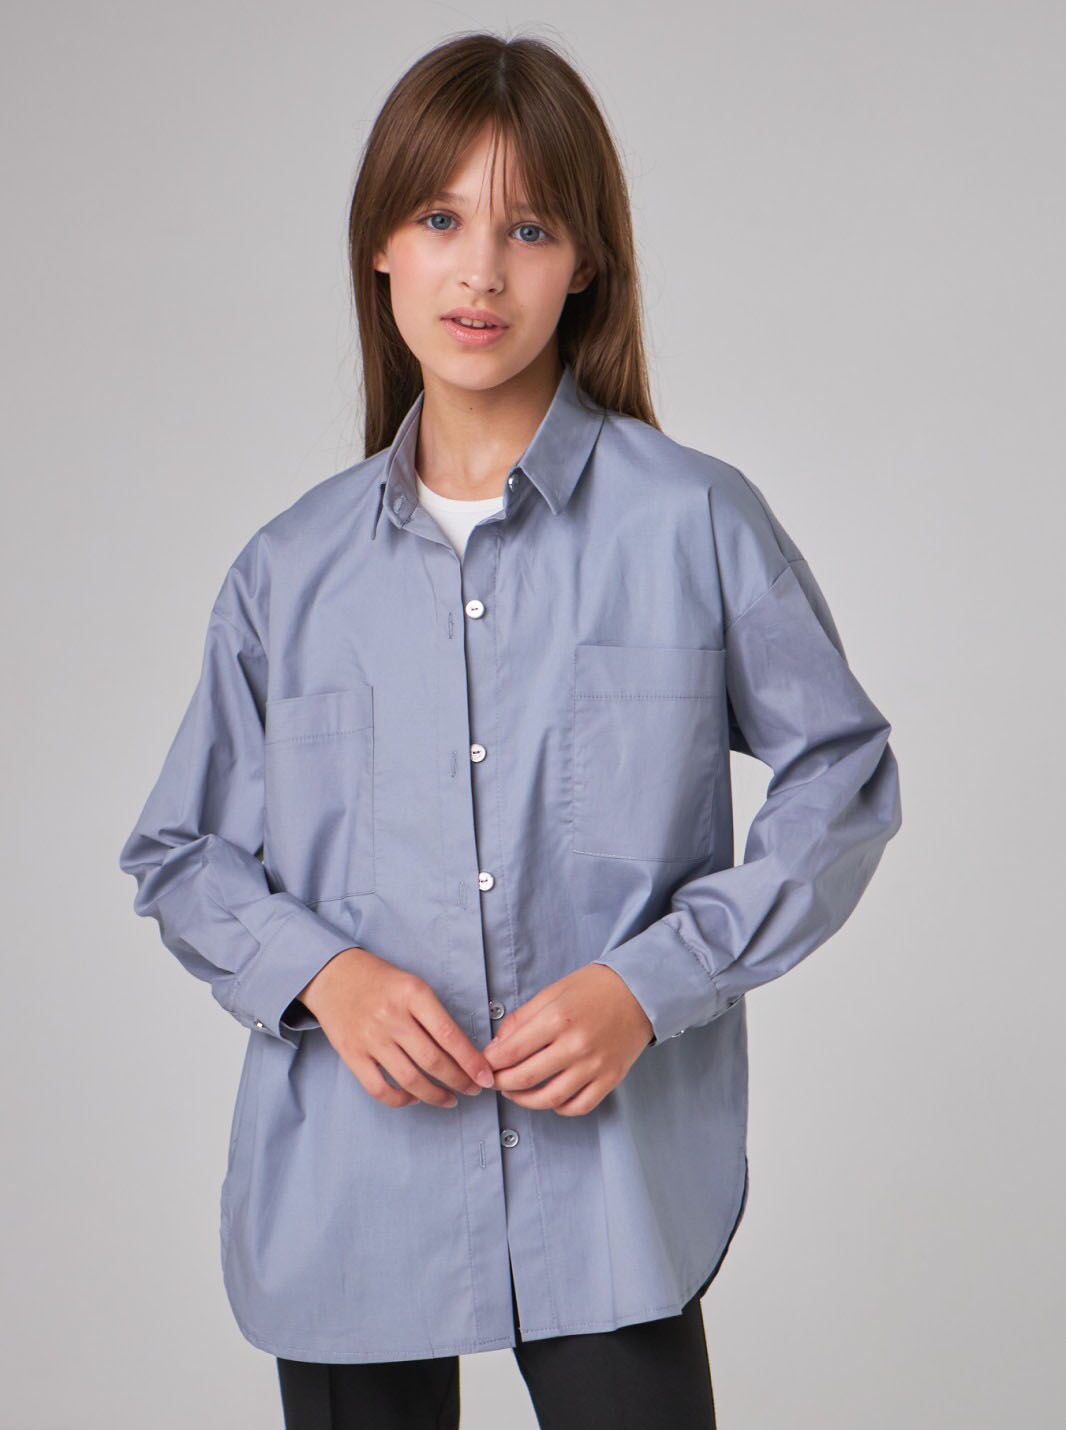 Рубашка для девочки Tair Kids Лора голубая 869 - цена